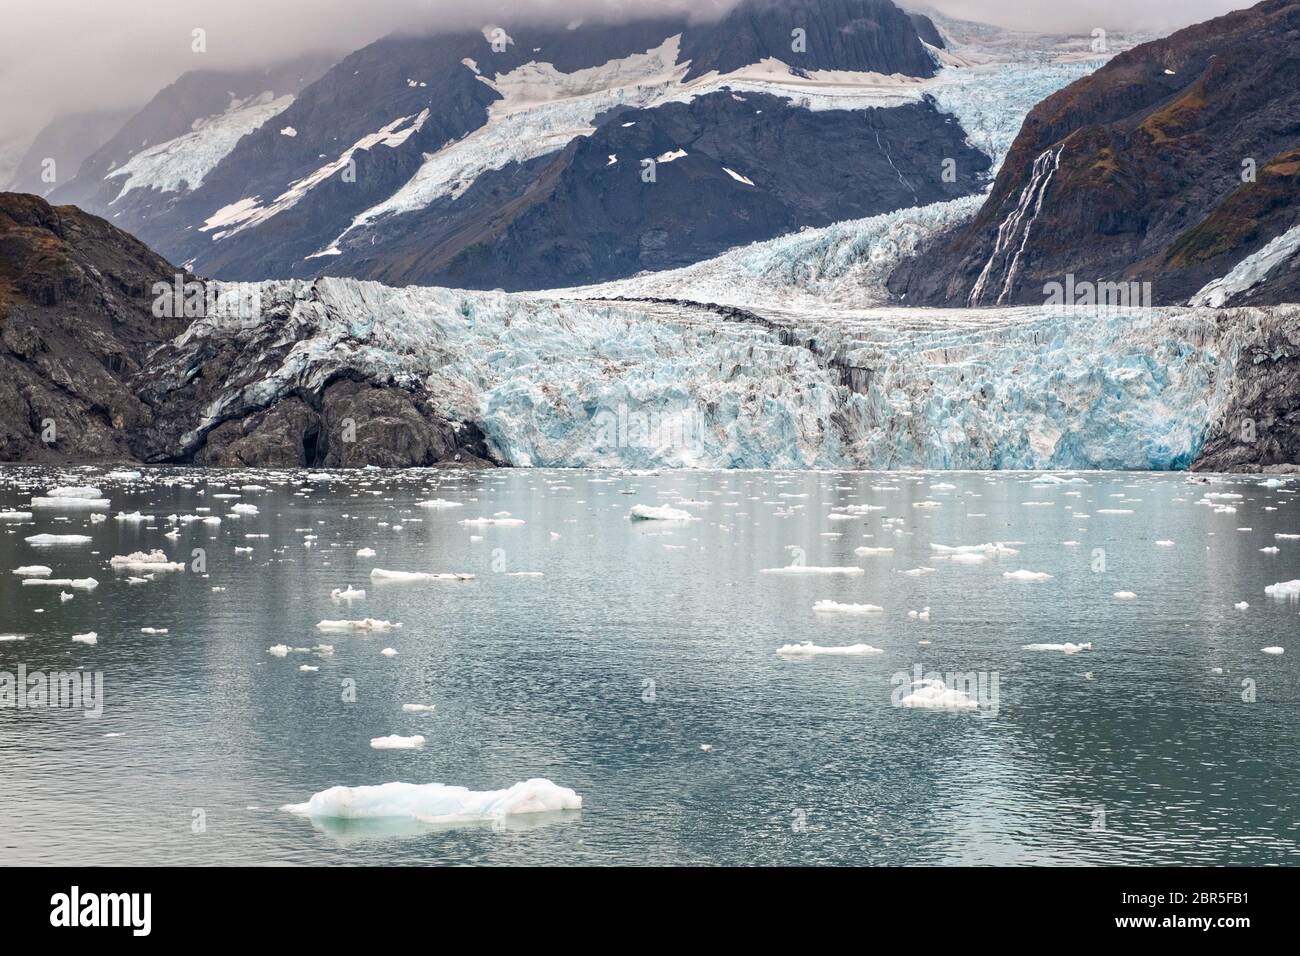 Il ghiacciaio a sorpresa con la morena mediale che corre lungo il centro e ghiaccio di brash galleggianti nel fiordo Harriman, vicino a Whittier, Alaska. Il ghiacciaio Surprise è il più attivo ghiacciaio di acqua di mare calvente del Prince William Sound. Foto Stock